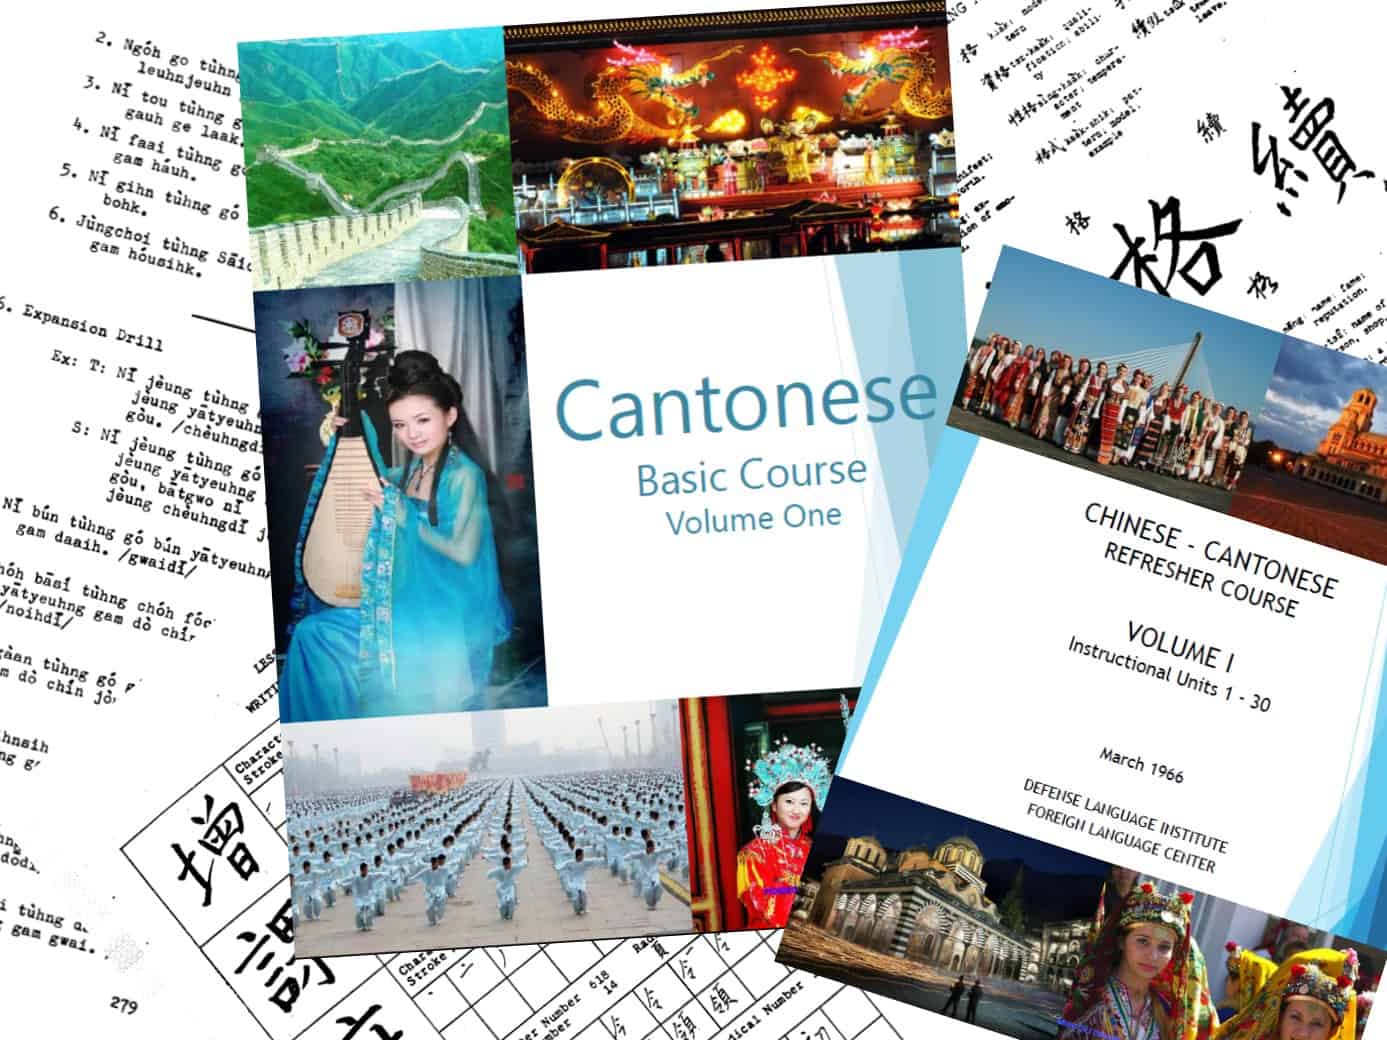 FSI Cantonese course DSI Cantonese course